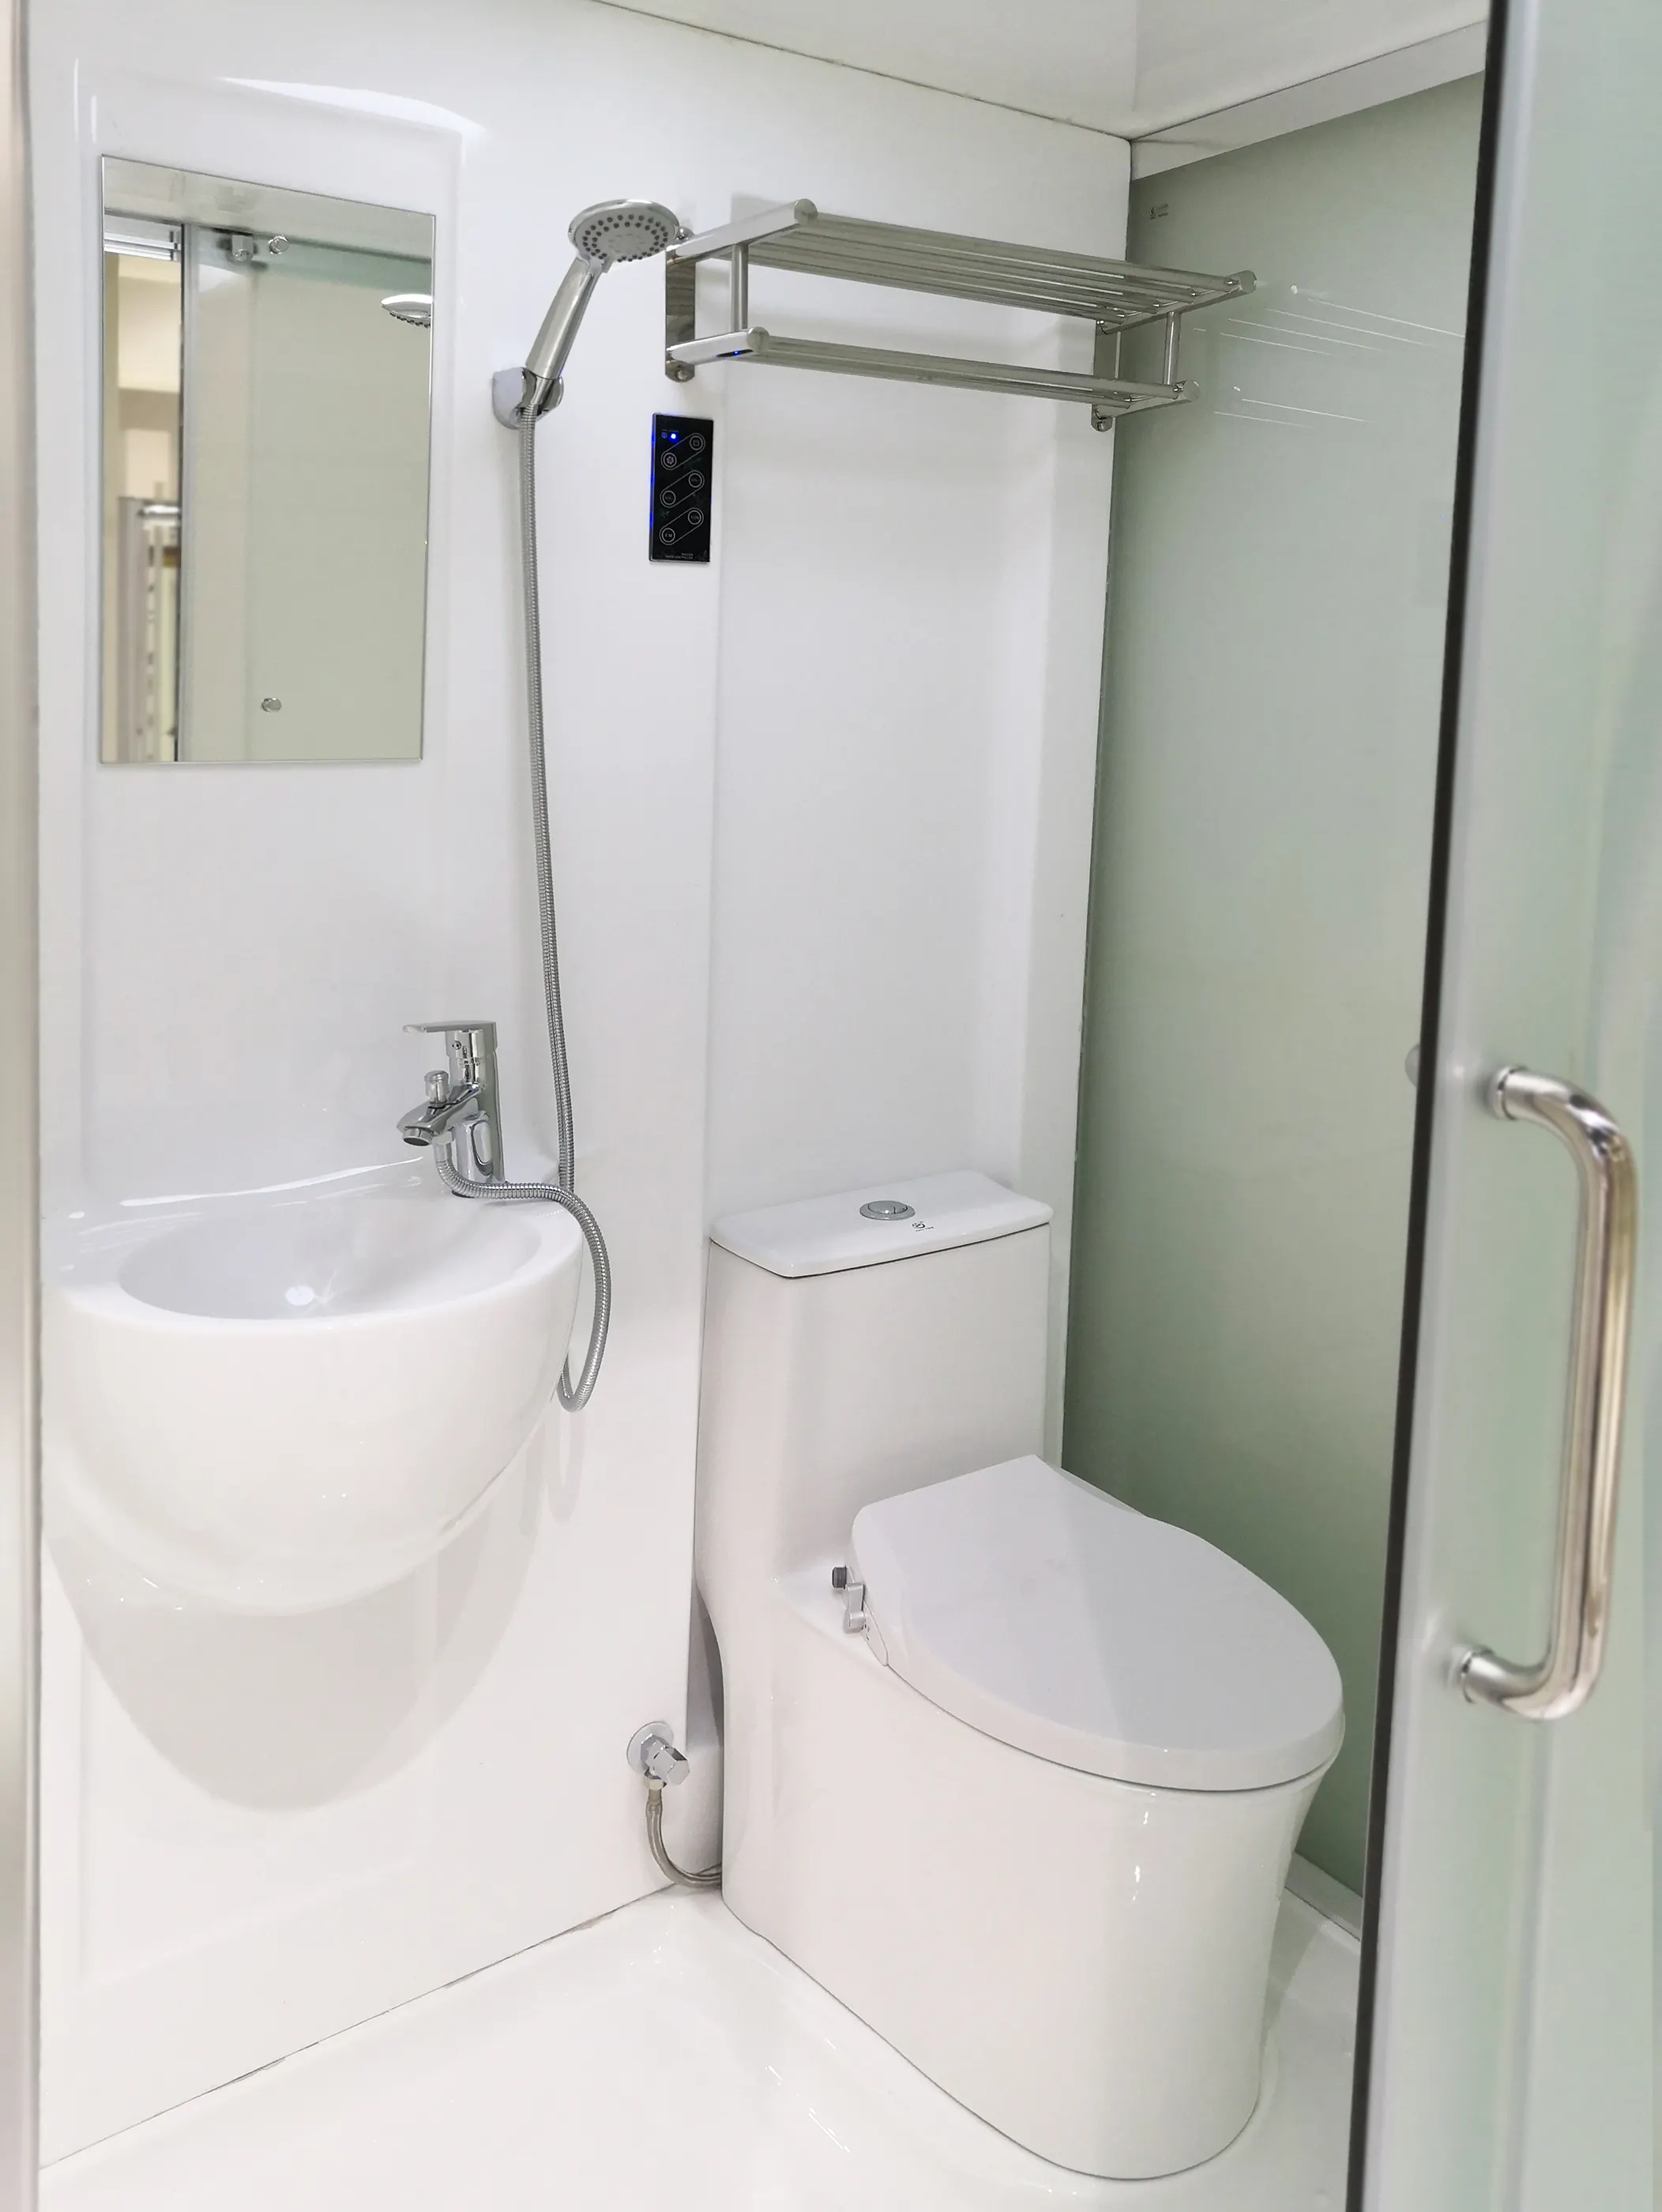 Quarto De Chuveiro Prefab Tudo Em Um Quarto De Chuveiro WC Fácil Instalação Chuveiro Unidade De Banheiro Prefab